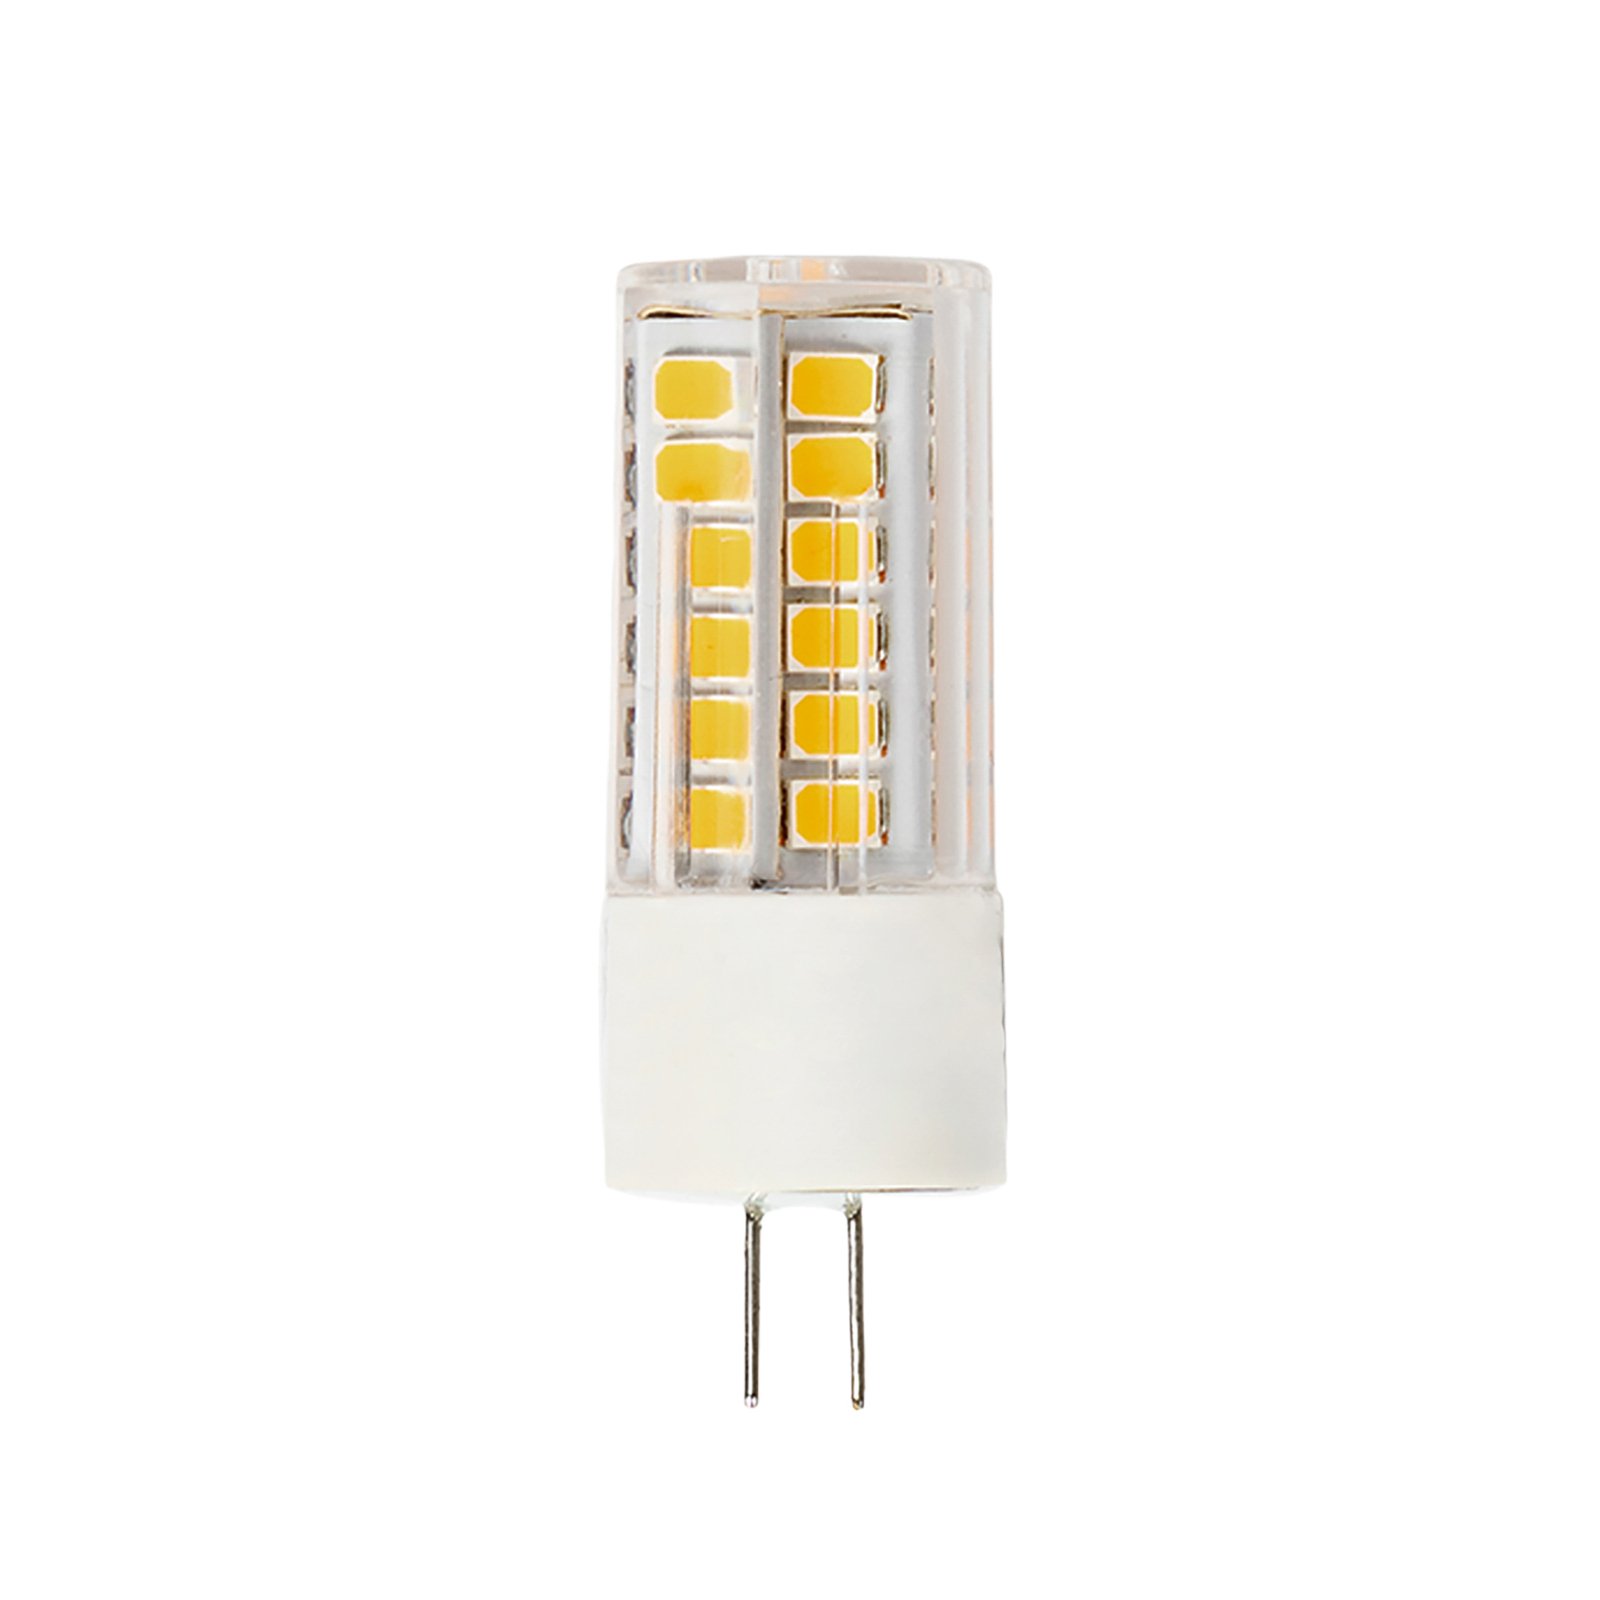 Arcchio bi-pin LED bulb G4 3.4W 3,000K